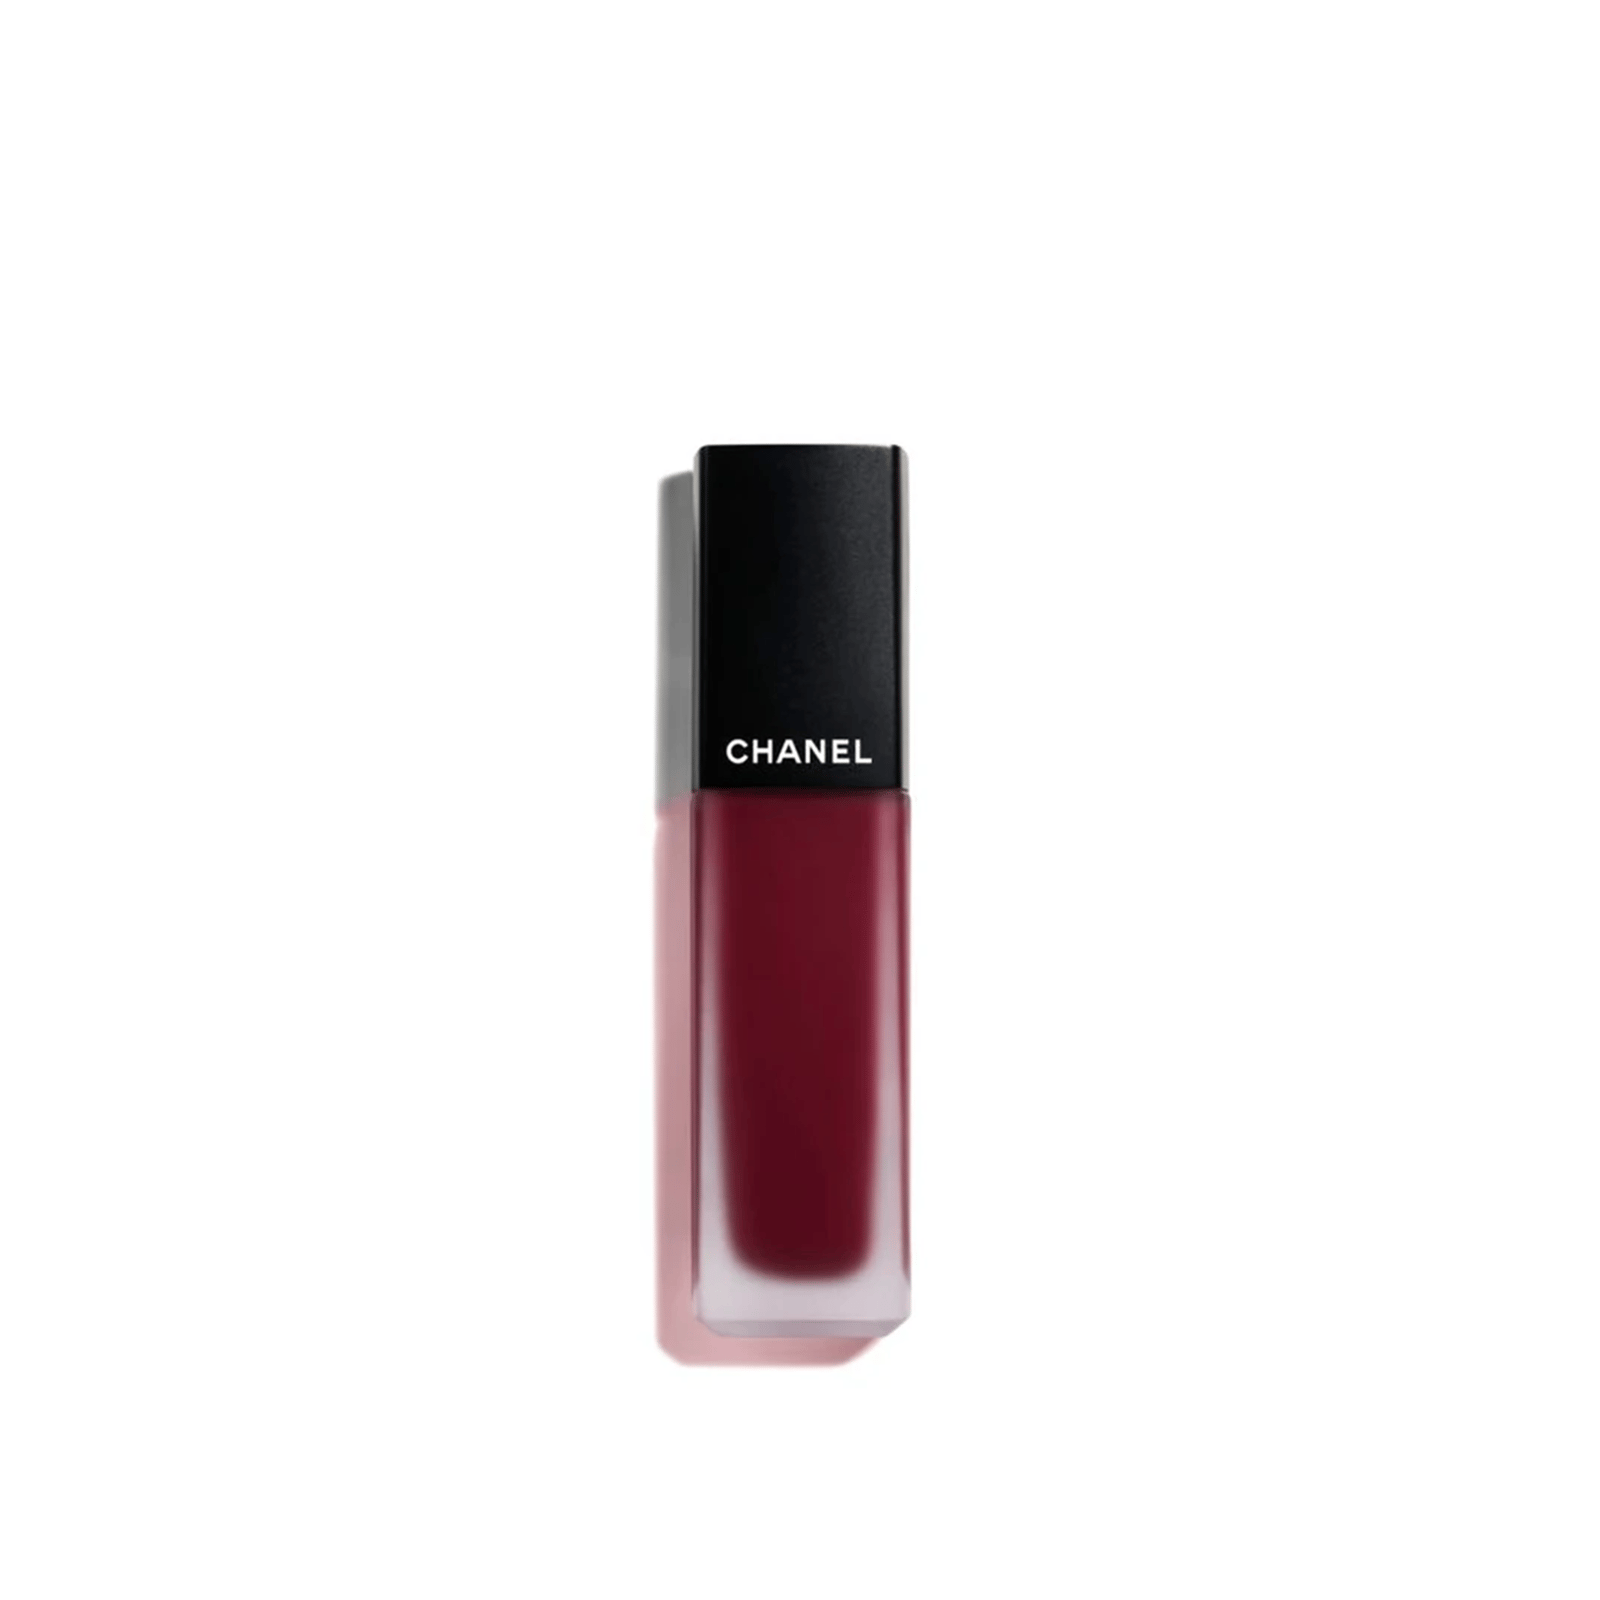 CHANEL Rouge Allure Ink Fusion Intense Matte Liquid Lip Colour 826 Pourpre 6ml